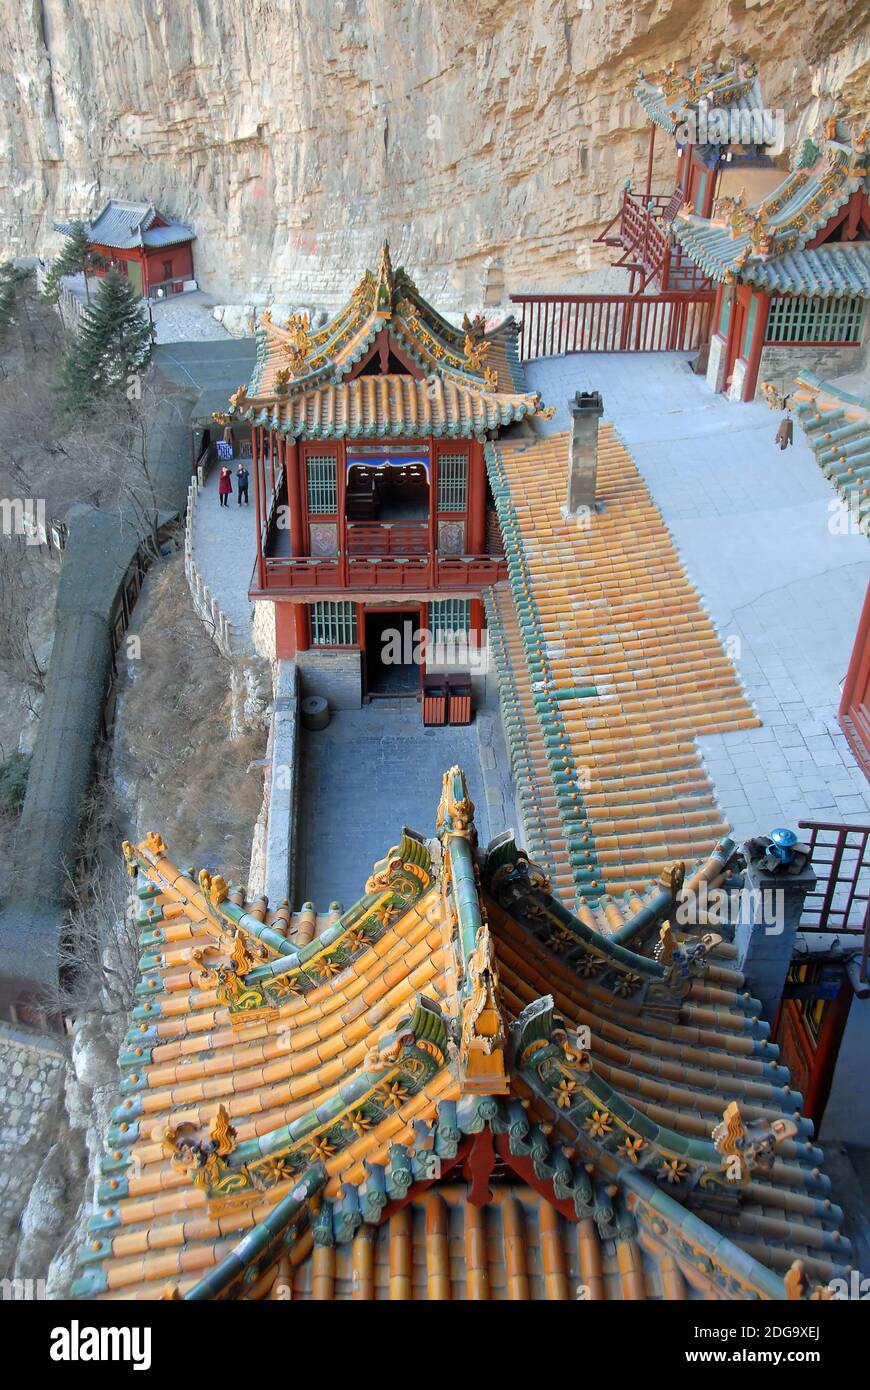 Le Temple suspendu ou Monastère suspendu près de Datong dans la province du Shanxi, en Chine. Détail des toits et d'une cour à l'intérieur du temple. Banque D'Images